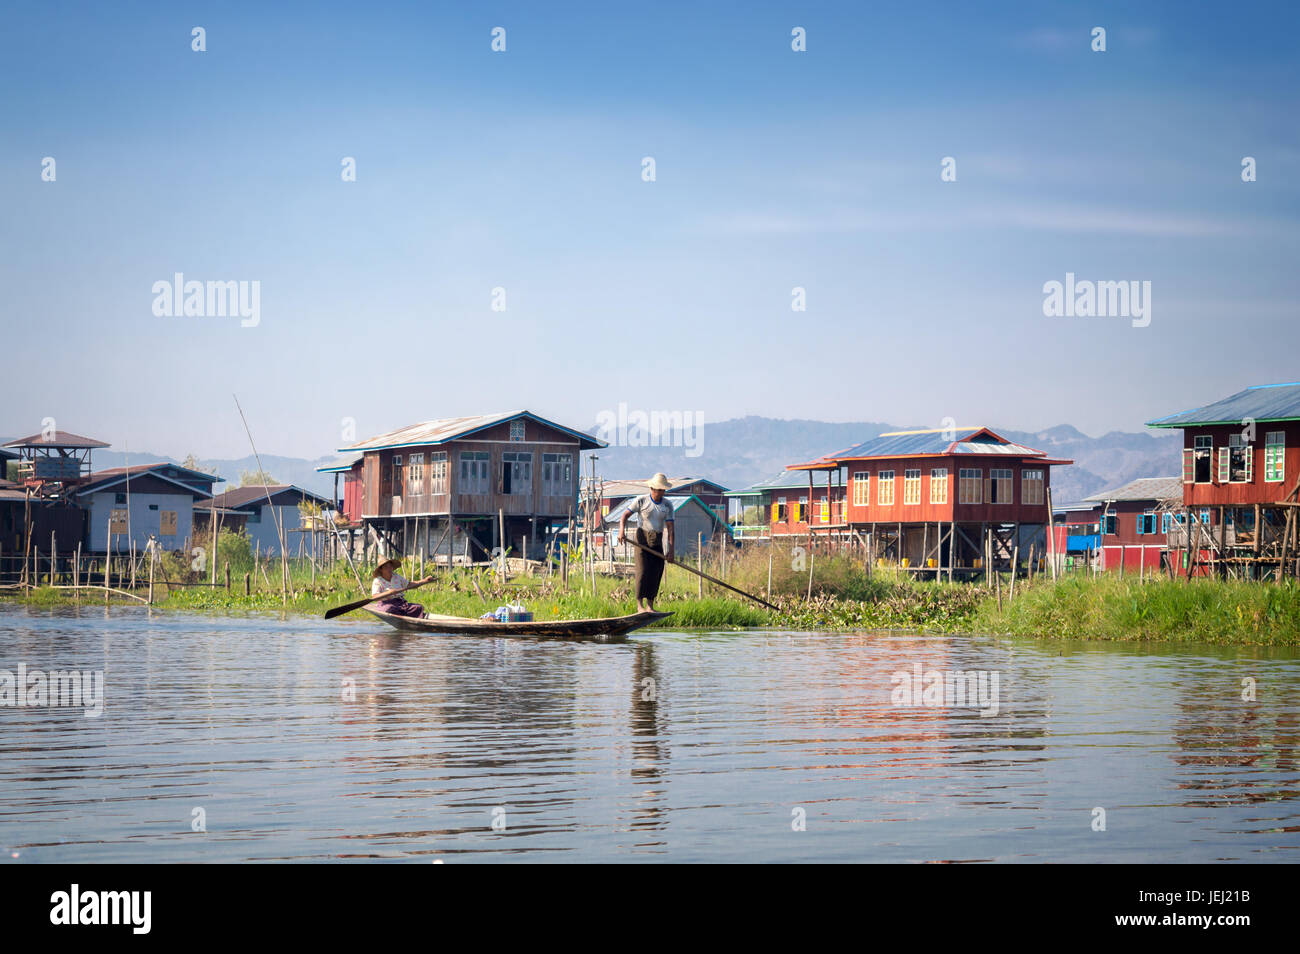 Maisons sur pilotis en bois et birmans de d'un bateau dans un village au lac Inle, en Birmanie, Myanmar Banque D'Images